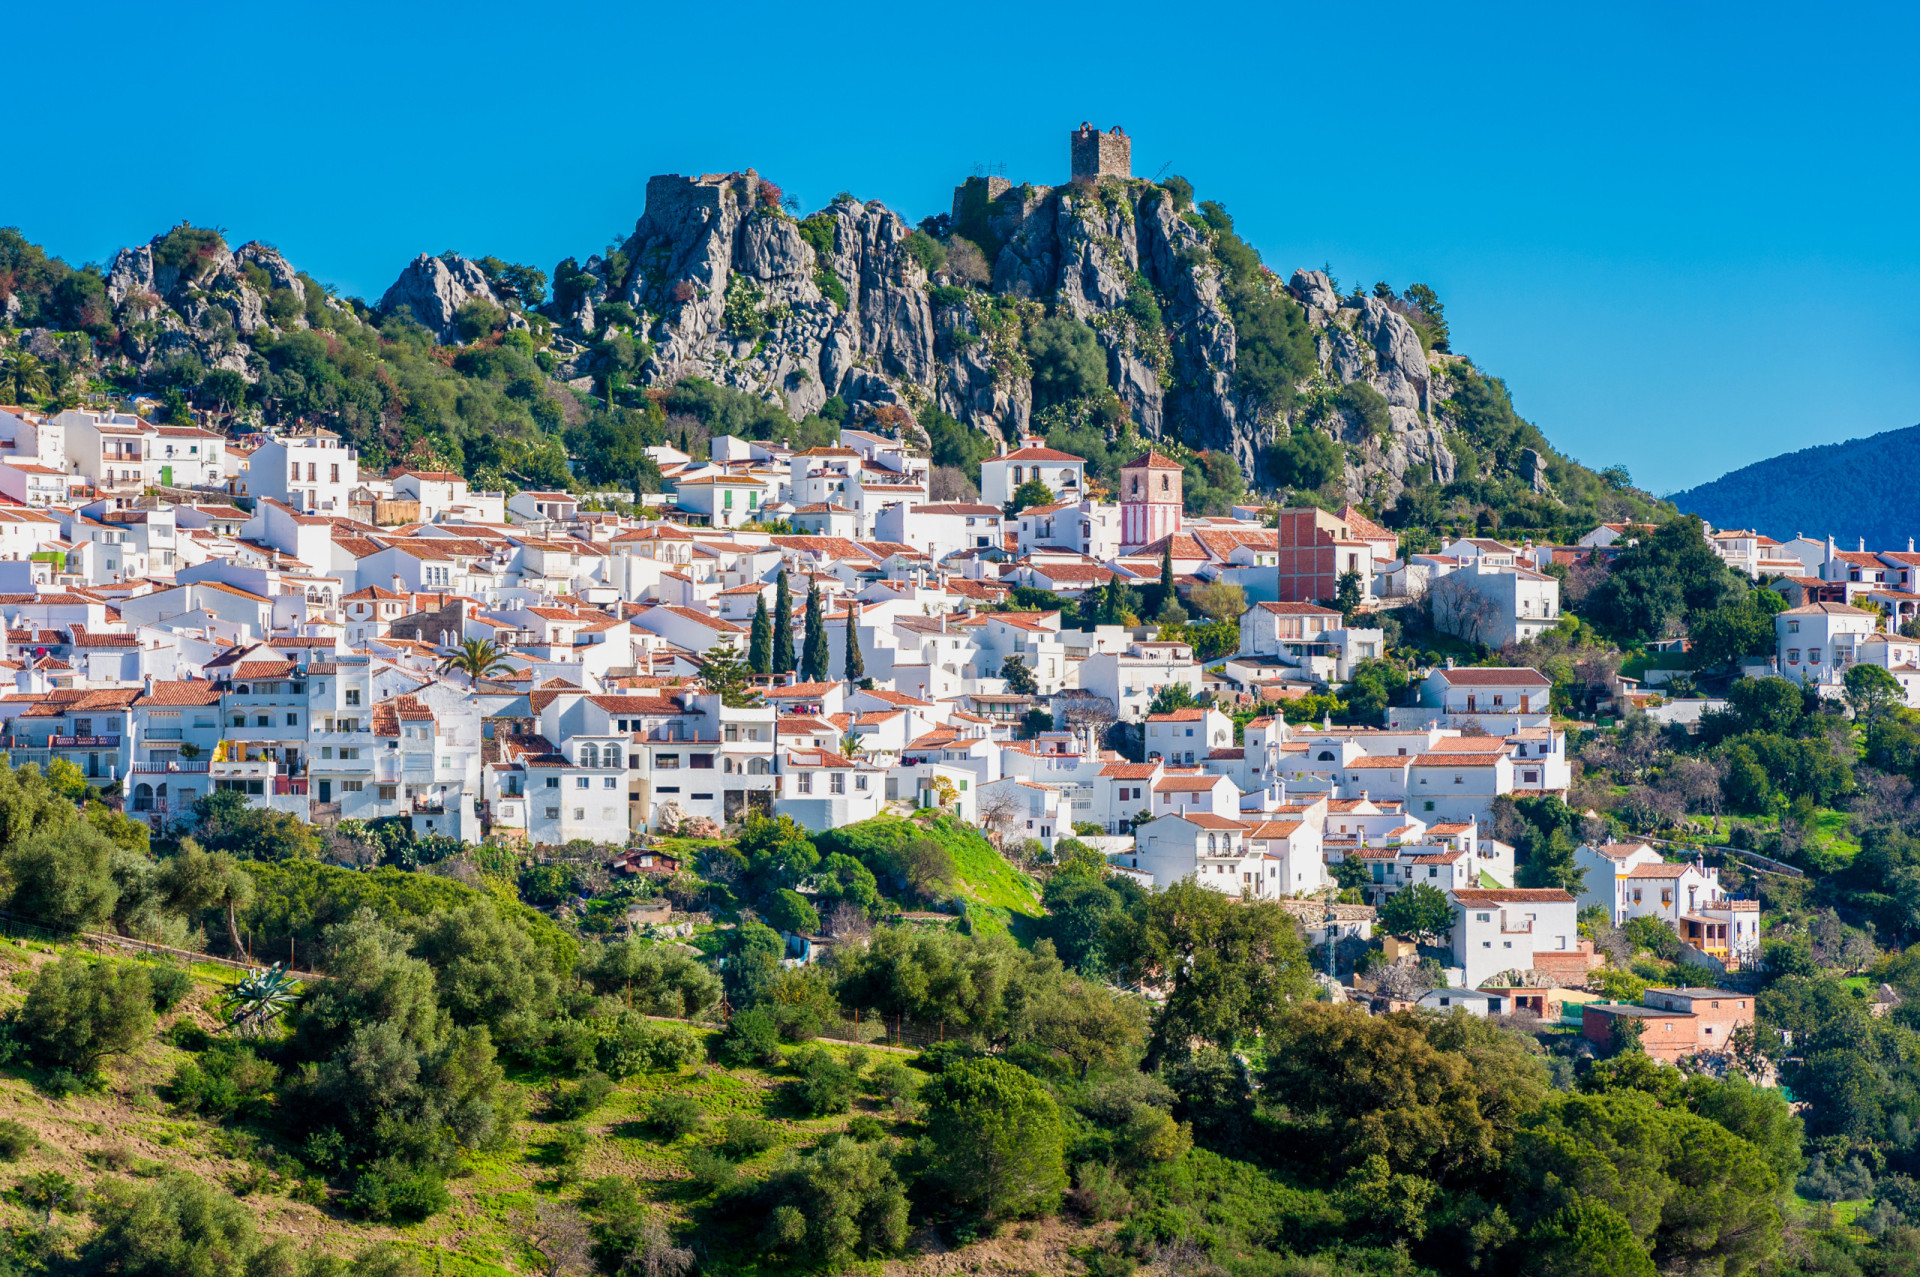 <p>Gaucín, en Andalousie, est également appelé le balcon de la Serranía en raison des vues splendides qu'il offre sur les montagnes de Crestellina. Les balcons de ses maisons de campagne permettent également de voir Gibraltar, le détroit de Gibraltar et même le Maroc.</p><p><a href="https://www.msn.com/fr-fr/community/channel/vid-7xx8mnucu55yw63we9va2gwr7uihbxwc68fxqp25x6tg4ftibpra?cvid=94631541bc0f4f89bfd59158d696ad7e">Suivez-nous et accédez tous les jours à du contenu exclusif</a></p>